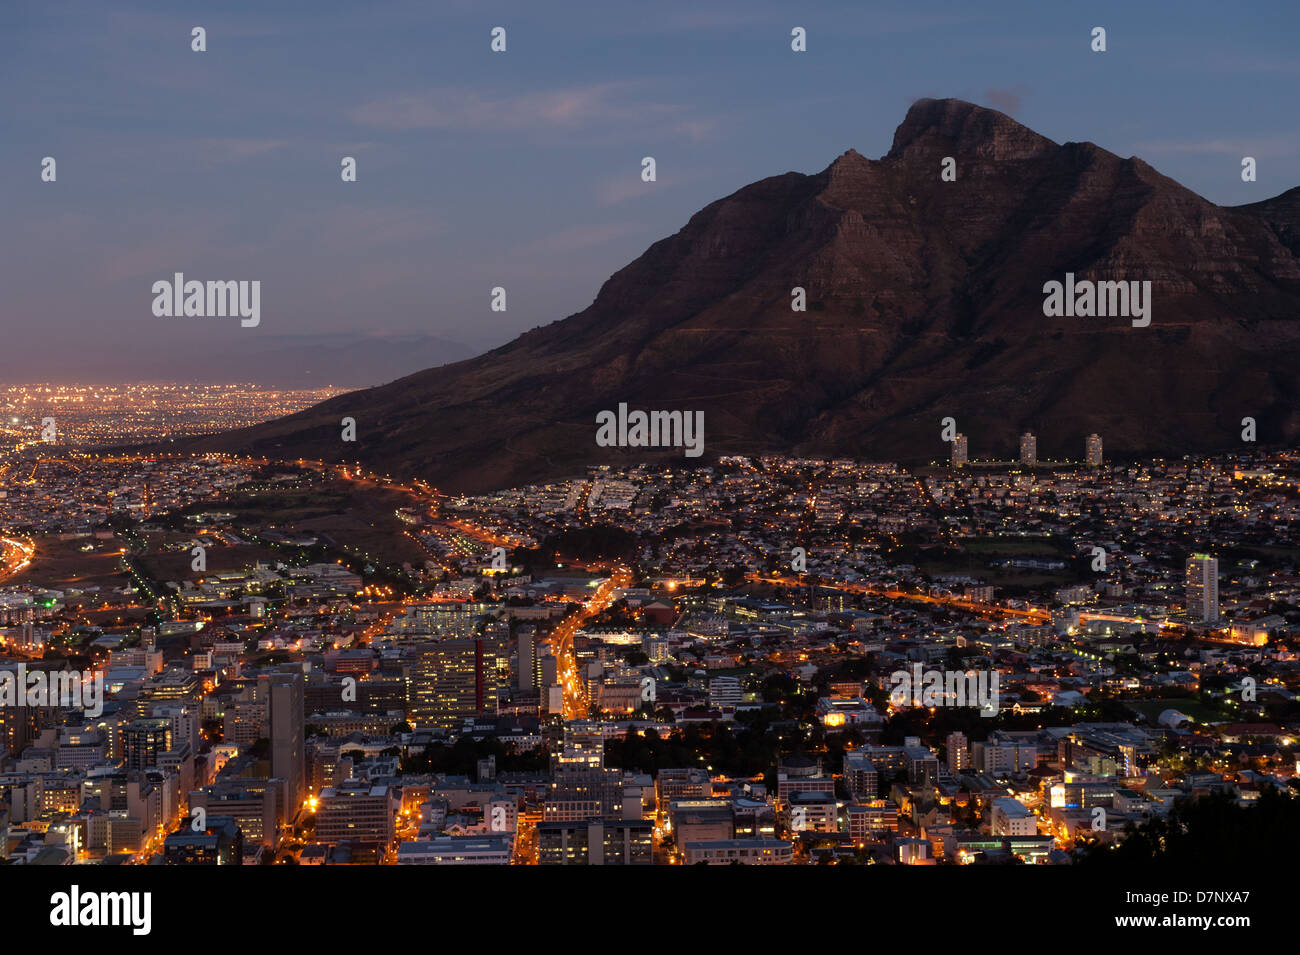 Vue de la ville du Cap et la montagne de la table, au crépuscule, en Afrique du Sud Banque D'Images